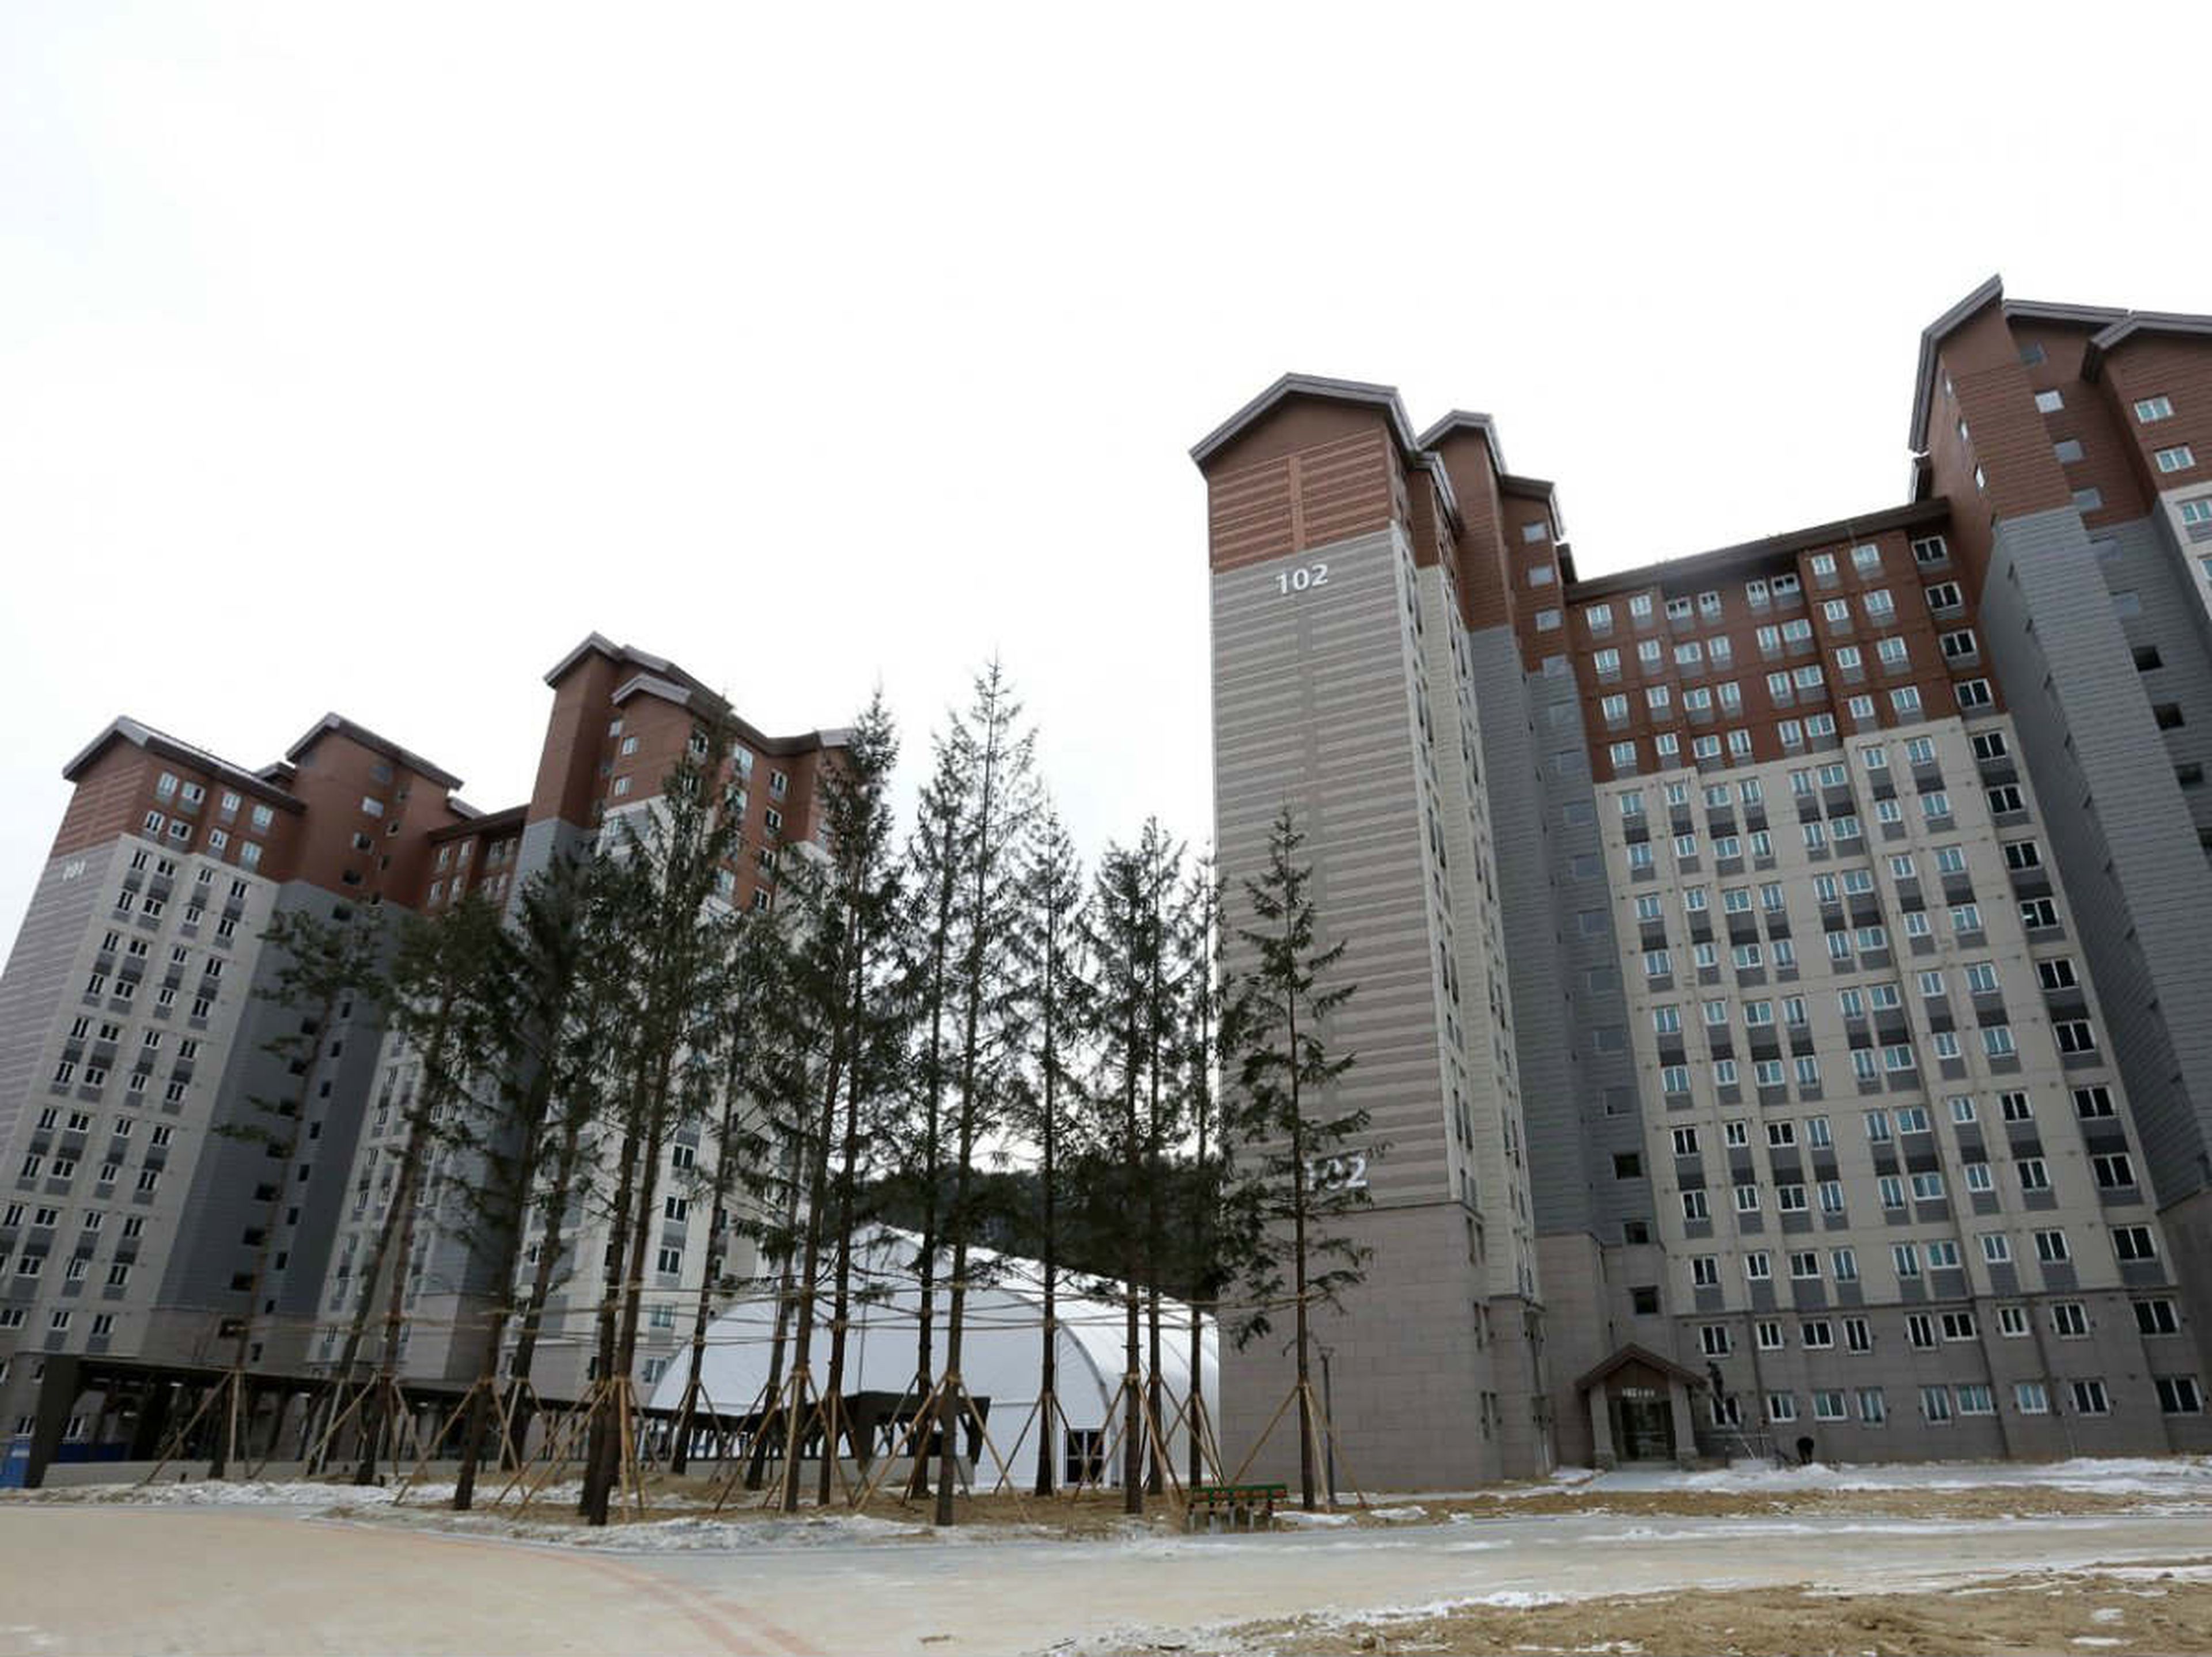 Edificios Villa Olímpica Juegos de Invierno Corea del Sur 2018